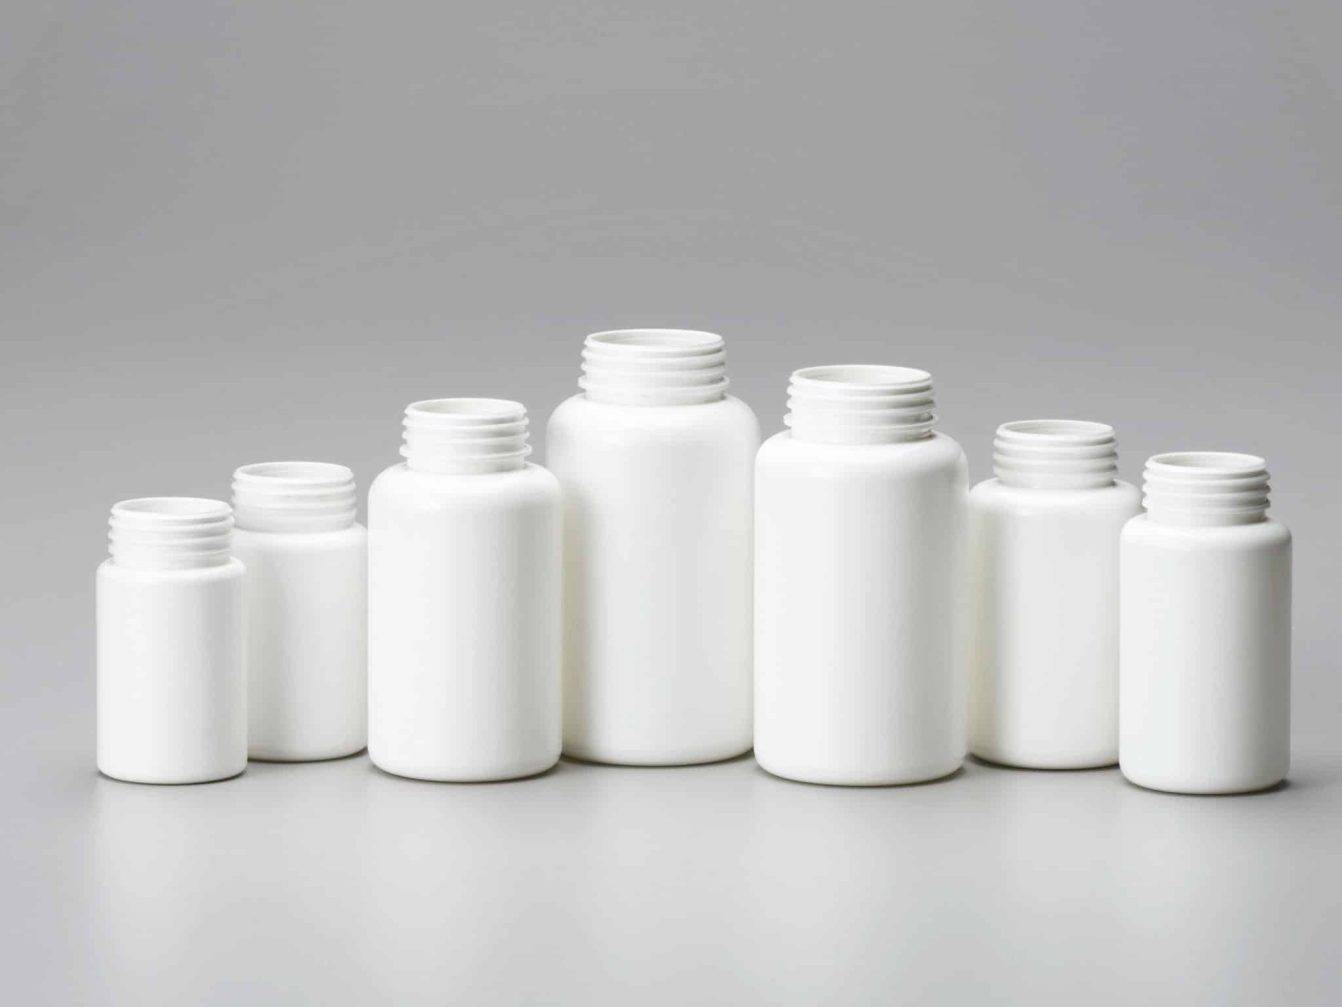 مکعرفی تفاوت های پلاستیک HDPE نسبت به بطری های پت PET در چیست